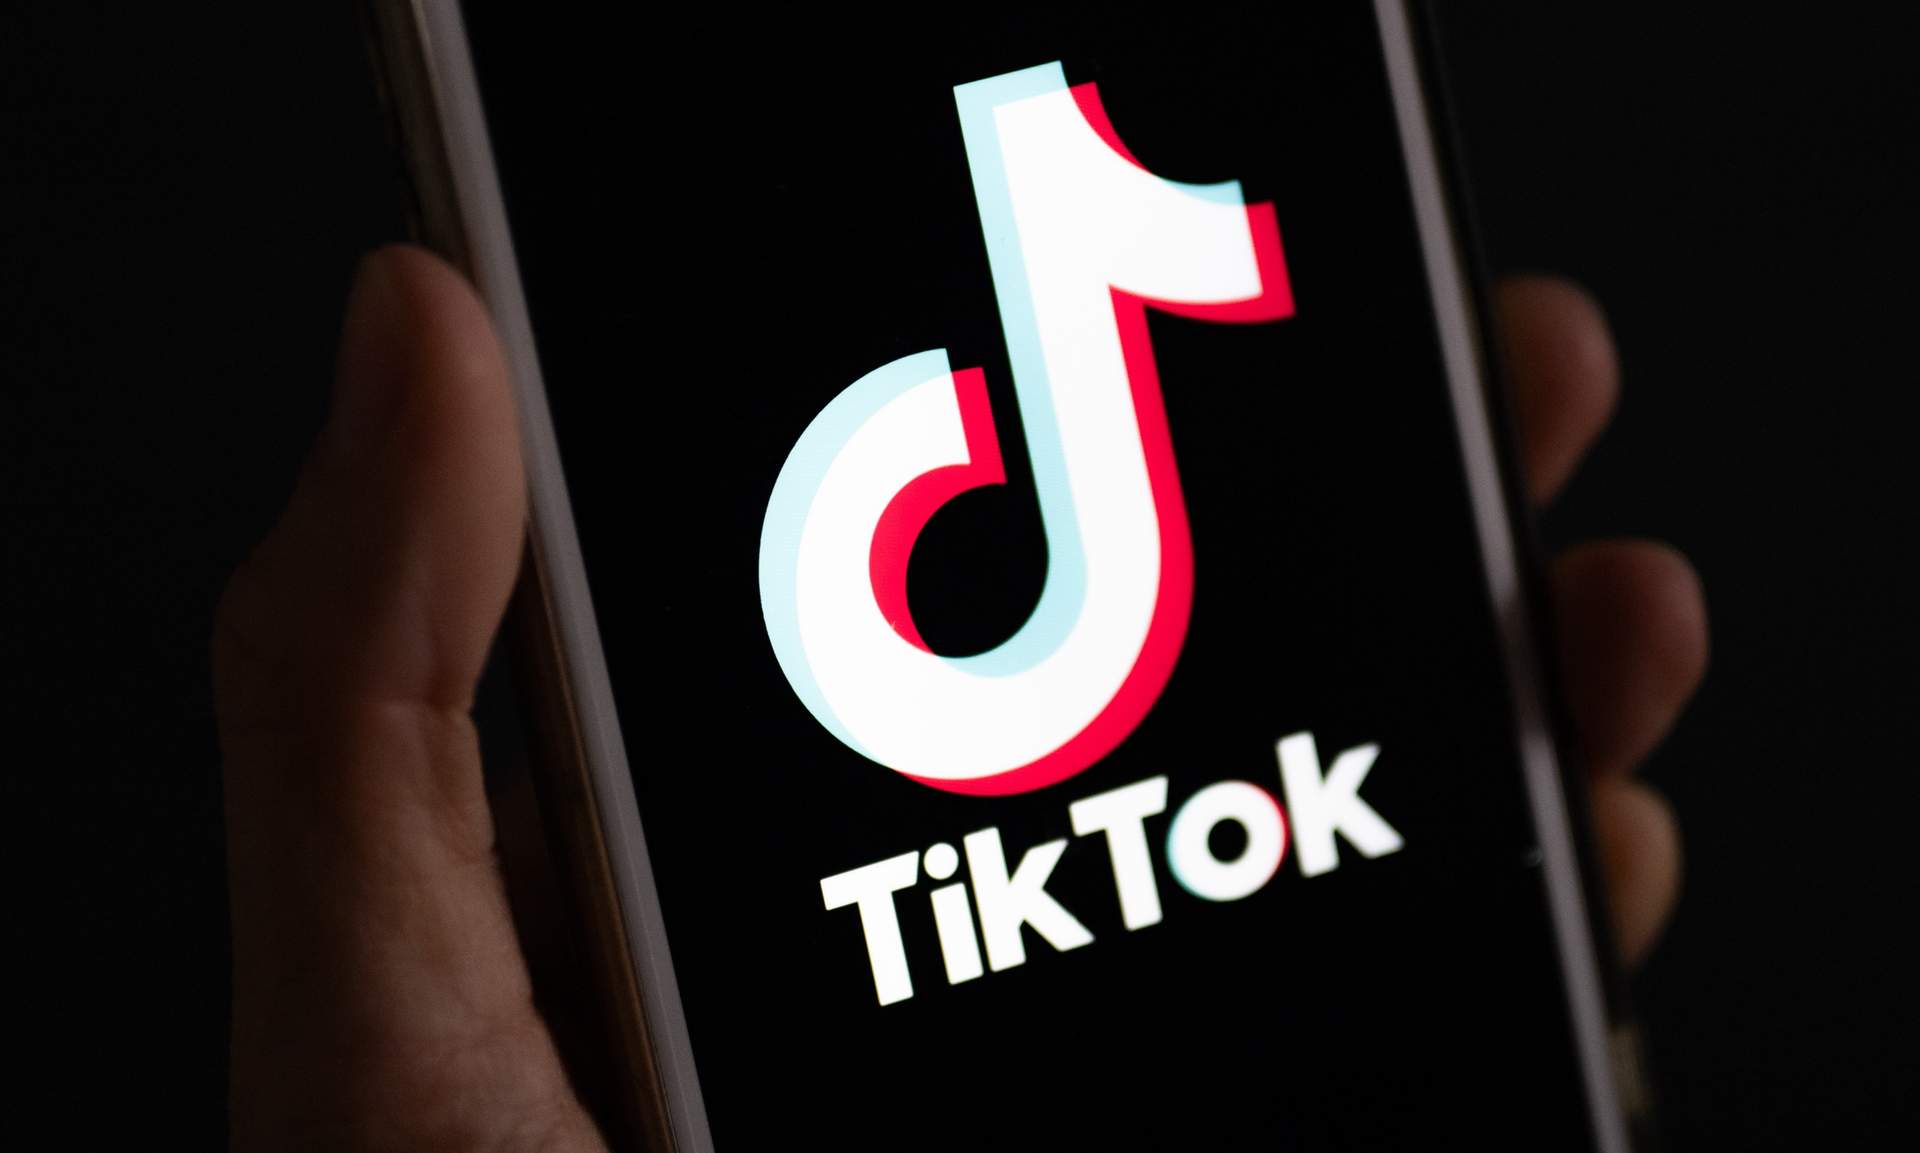 La Cámara de Representantes de EE.UU. aprueba el proyecto de ley para vetar TikTok salvo venta de su matriz